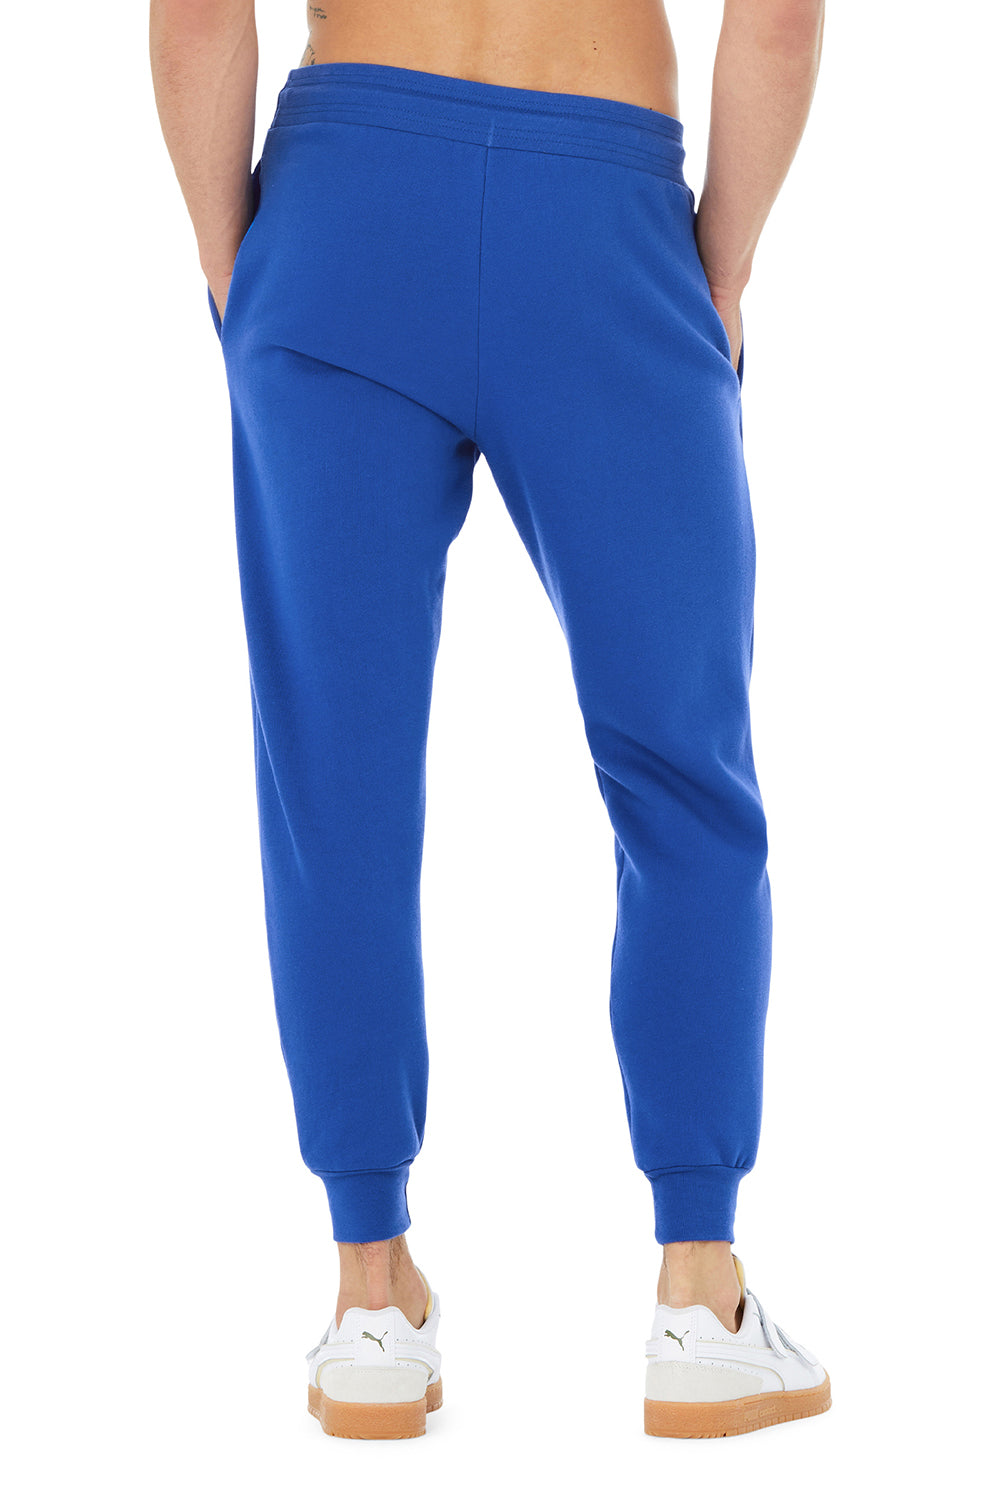 Bella + Canvas BC3727 Mens Jogger Sweatpants w/ Pockets True Royal Blue Model Back